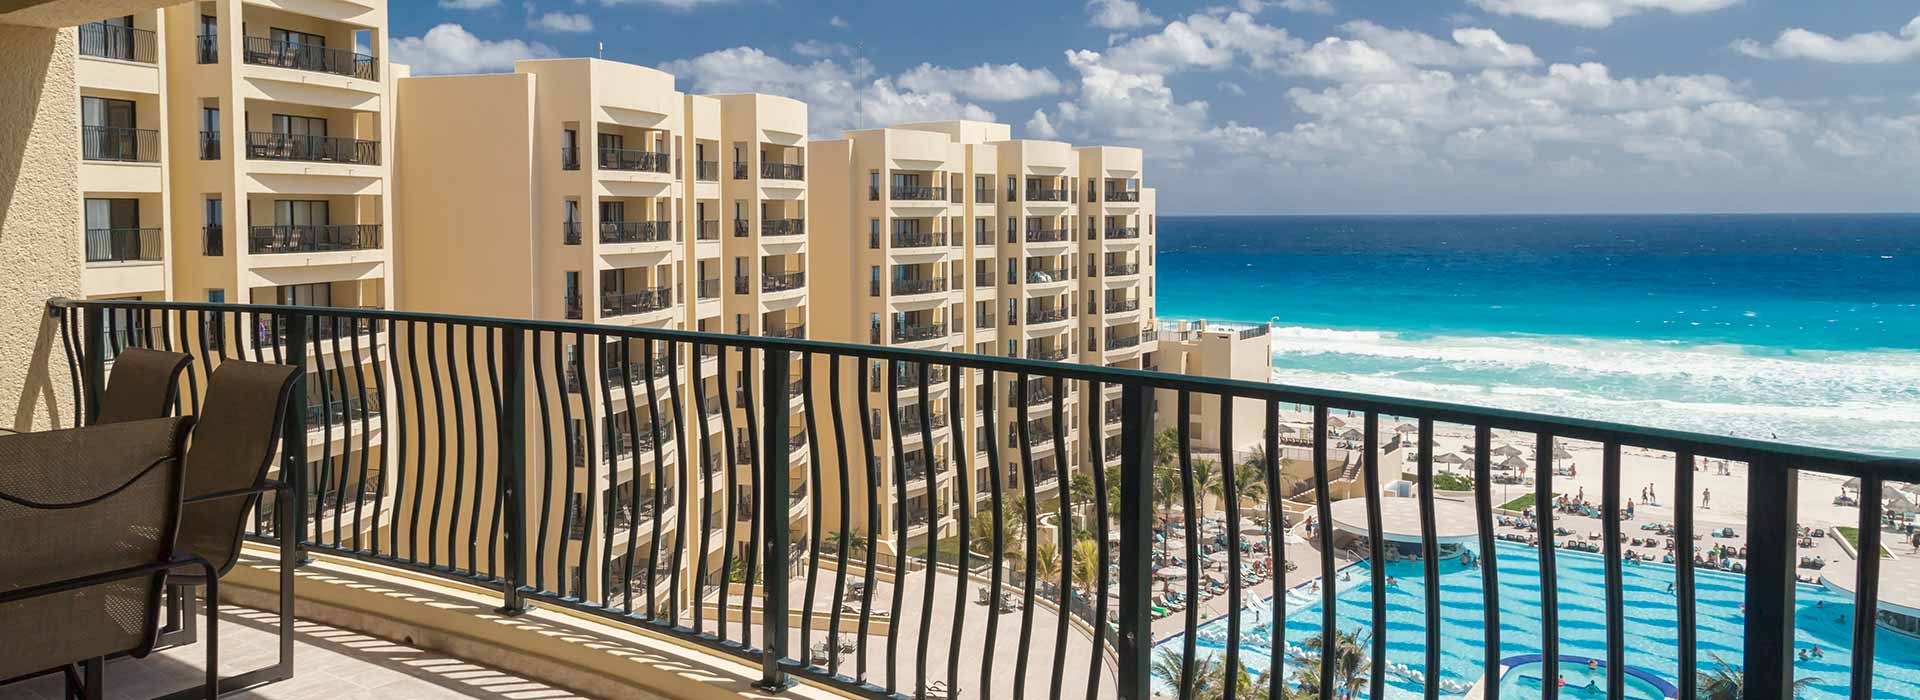 Villas con vista al mar de dos recamaras y balcón privado en el Resort Todo Incluido en Cancun